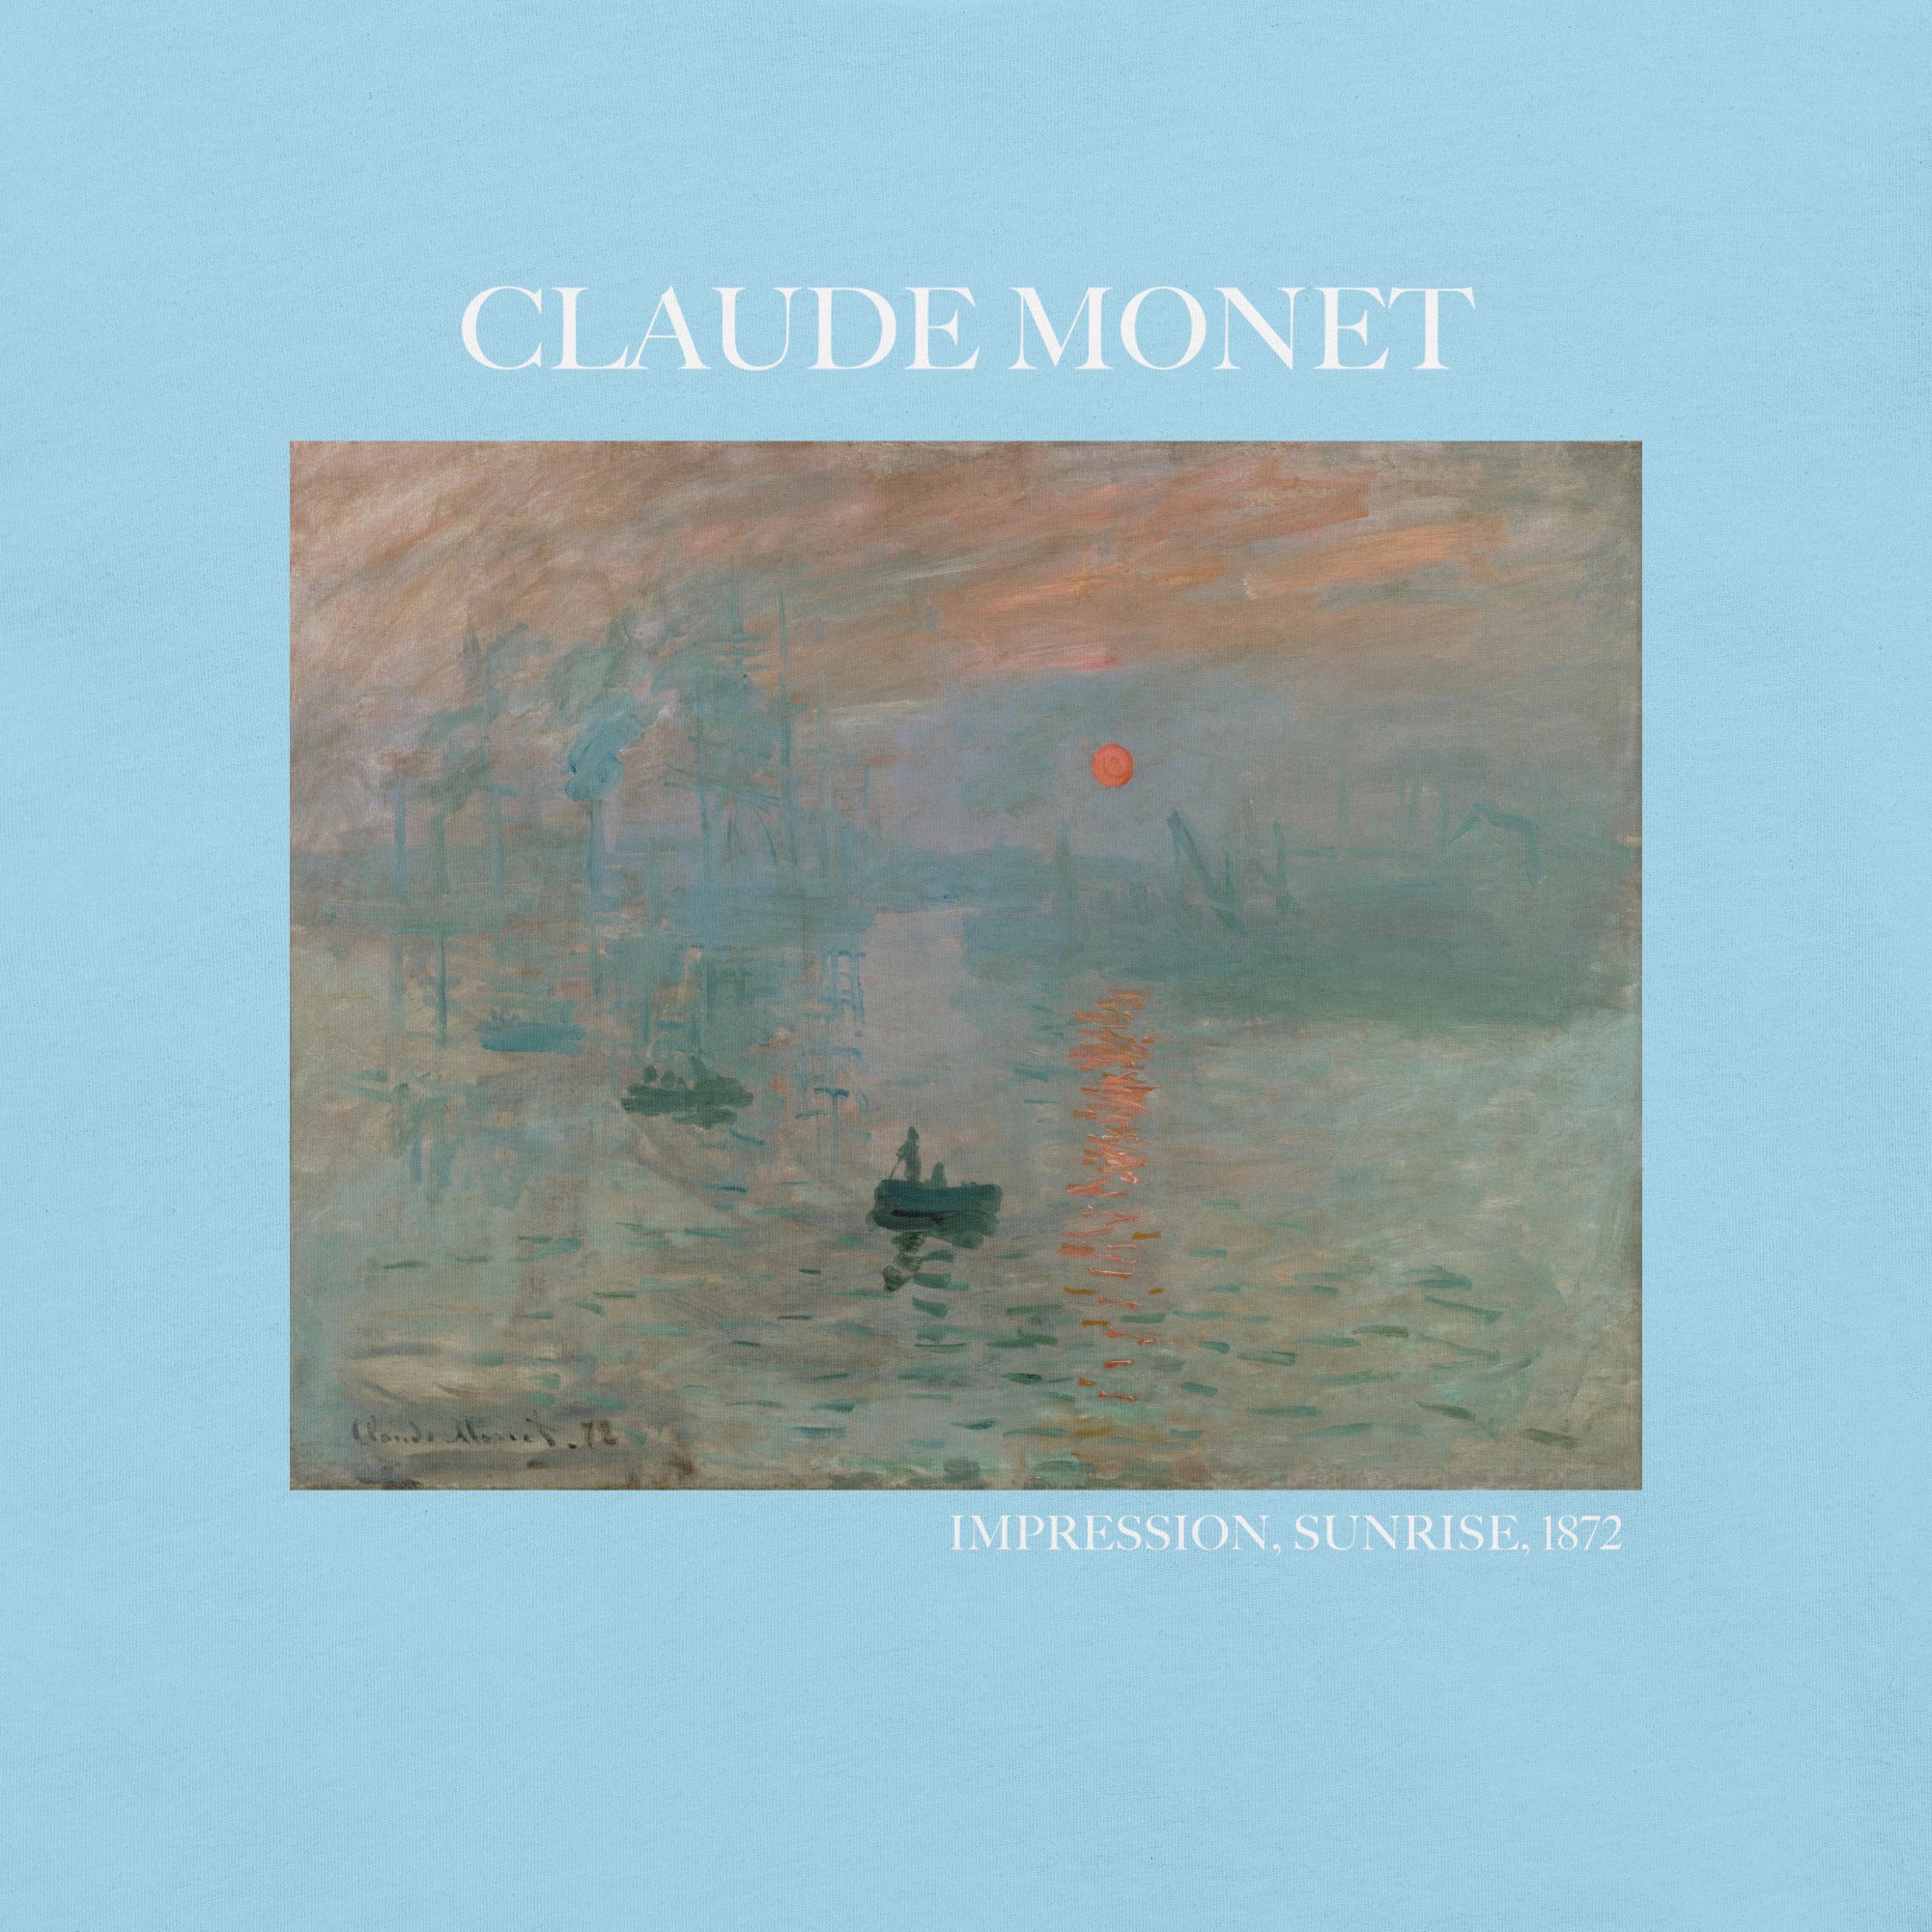 Claude Monet T-Shirt „Impression, Sonnenaufgang“, berühmtes Gemälde, Unisex, klassisches Kunst-T-Shirt